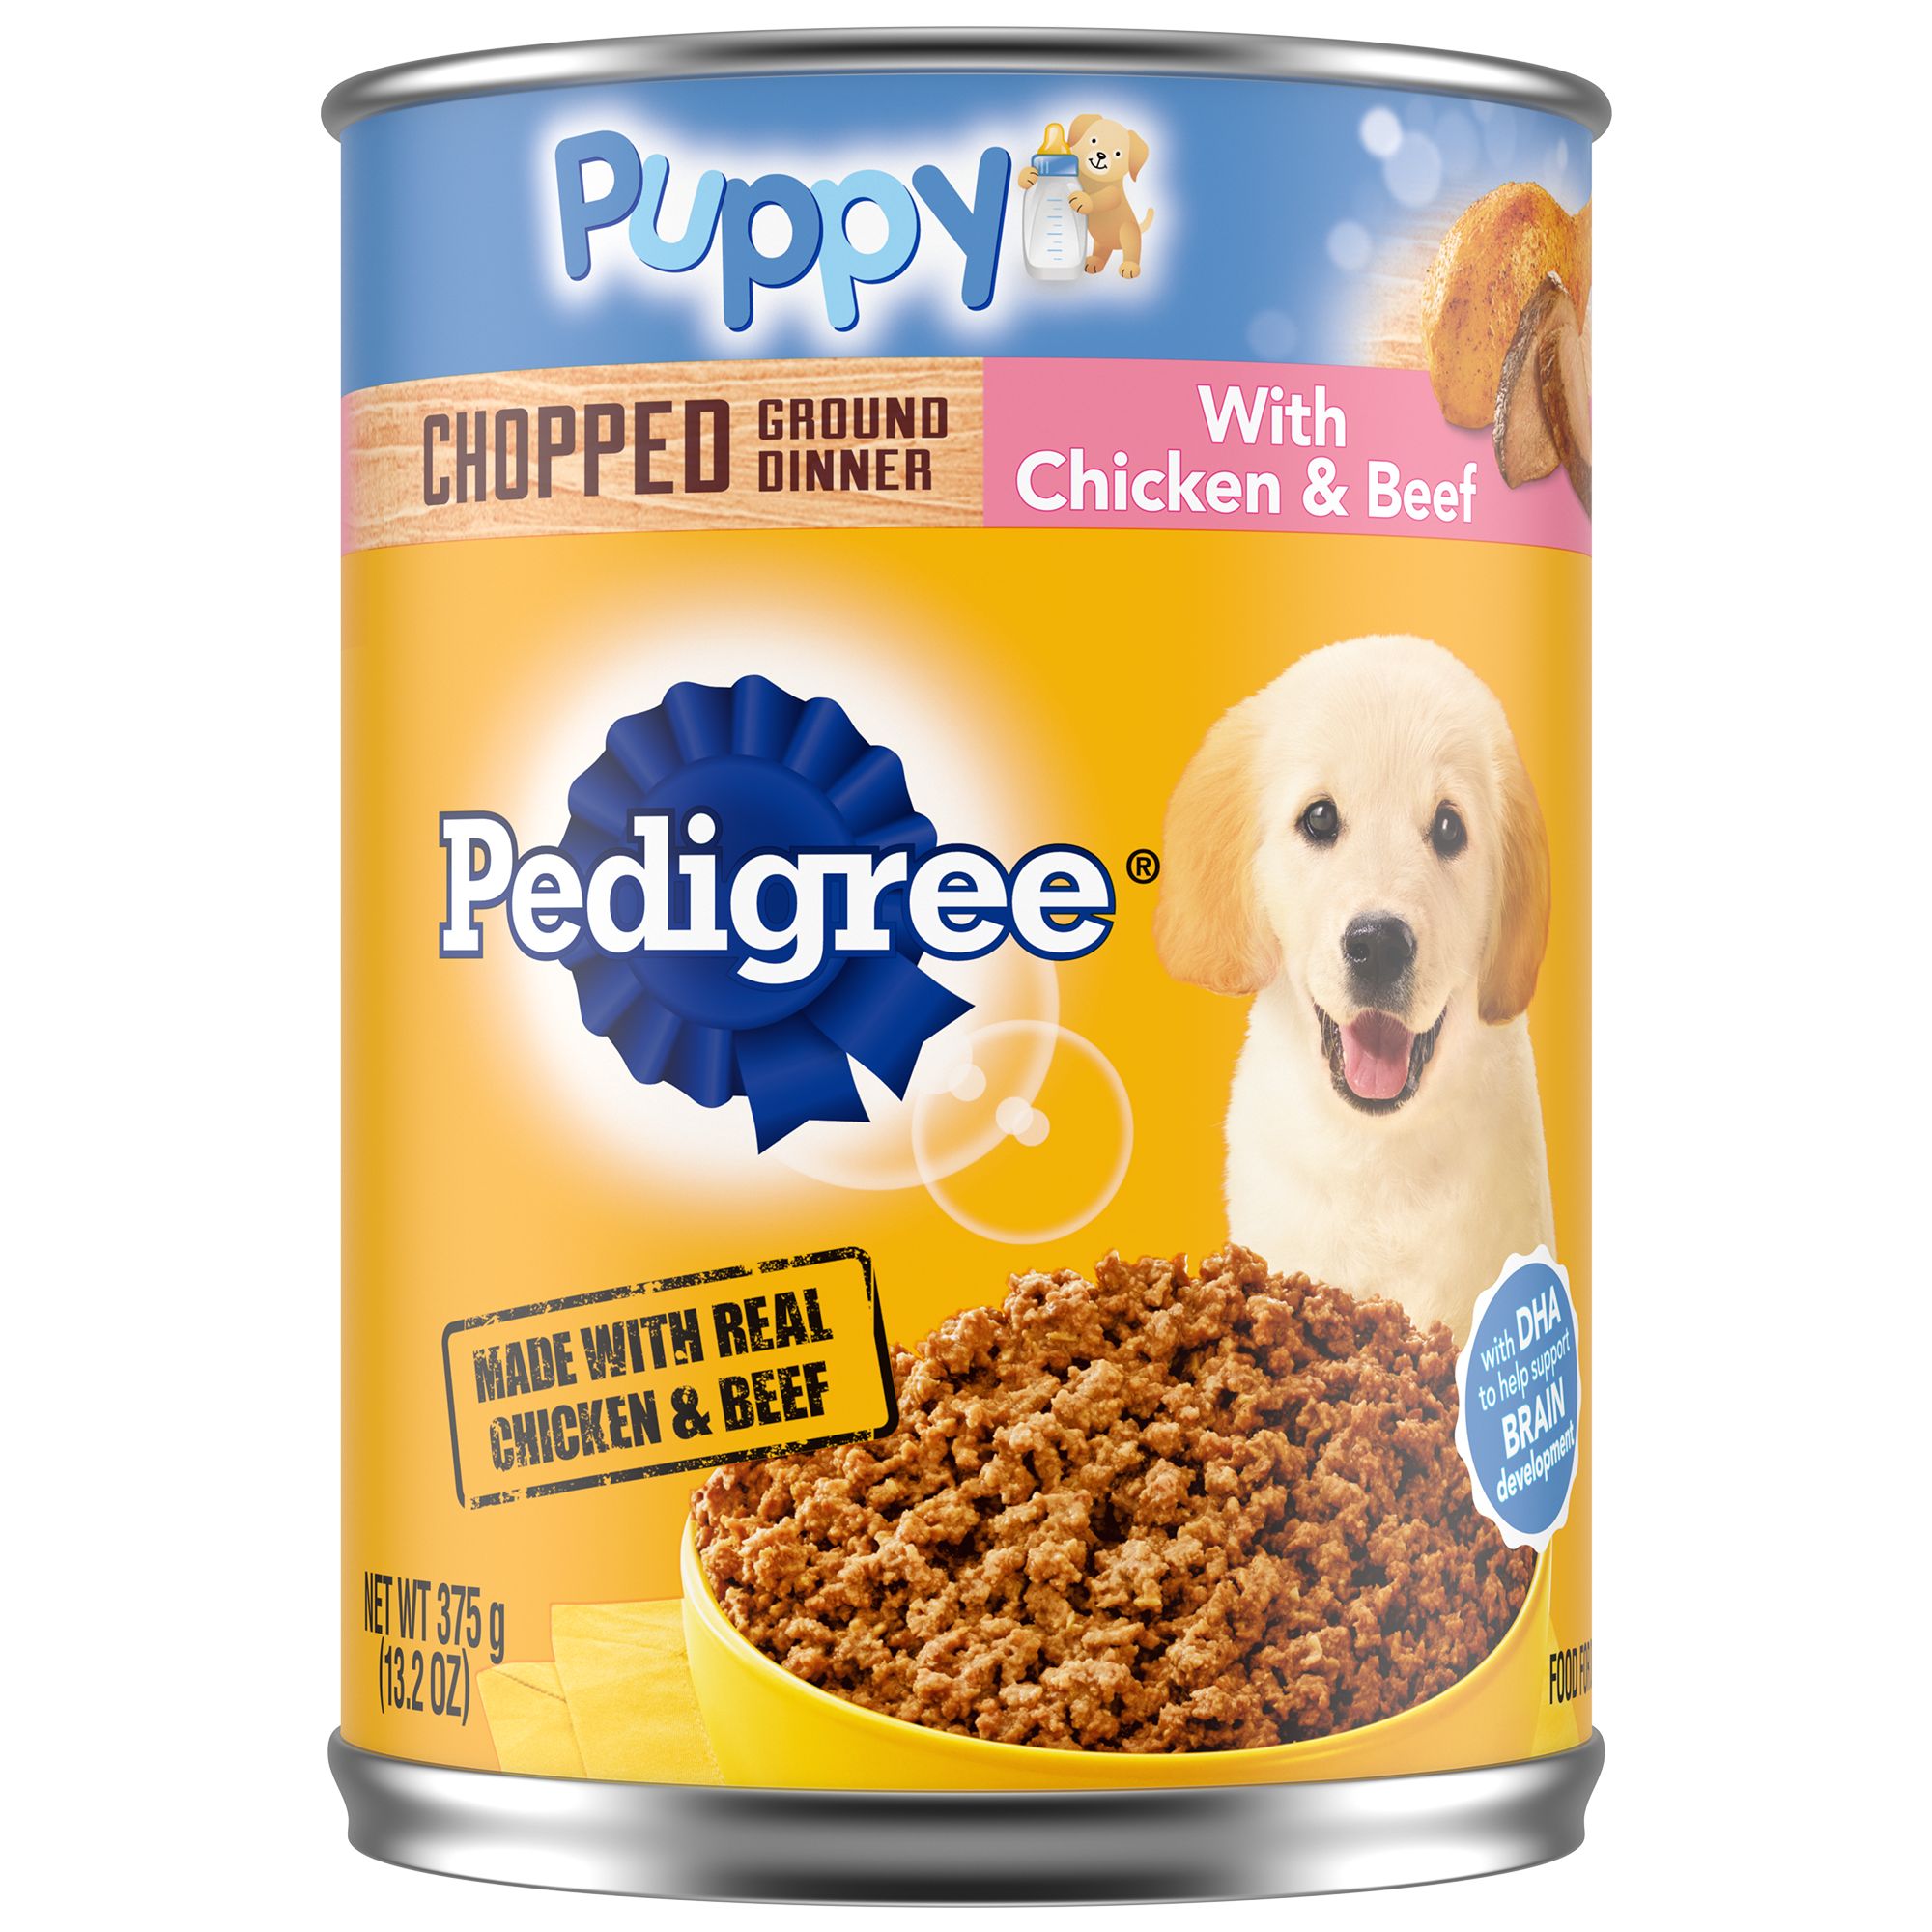 pedigree dog food